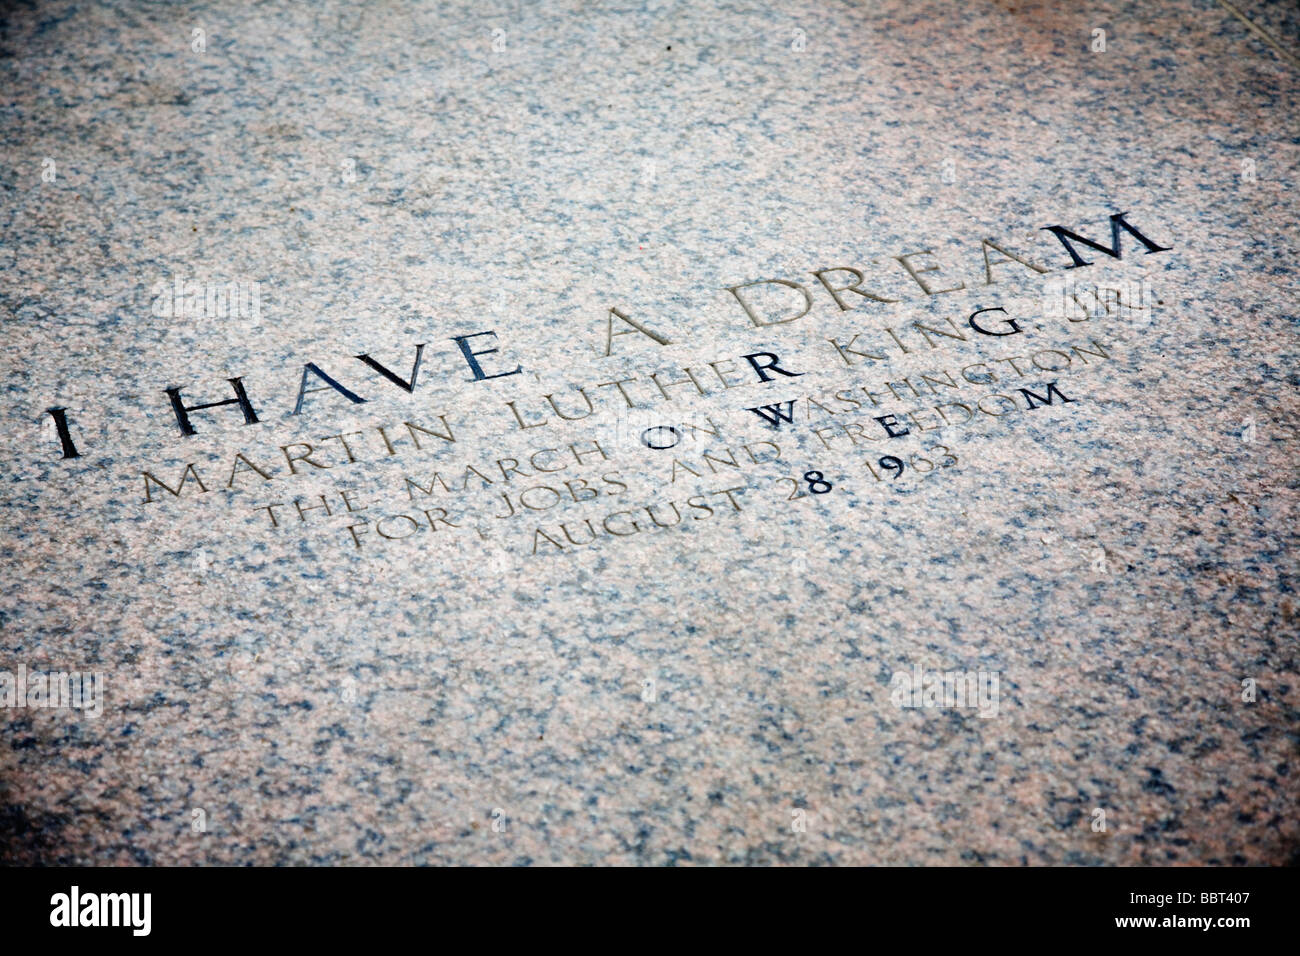 Martin Luther King Jr s citer J'AI UN RÊVE gravure à la Lincoln Memorial Washington DC USA Banque D'Images